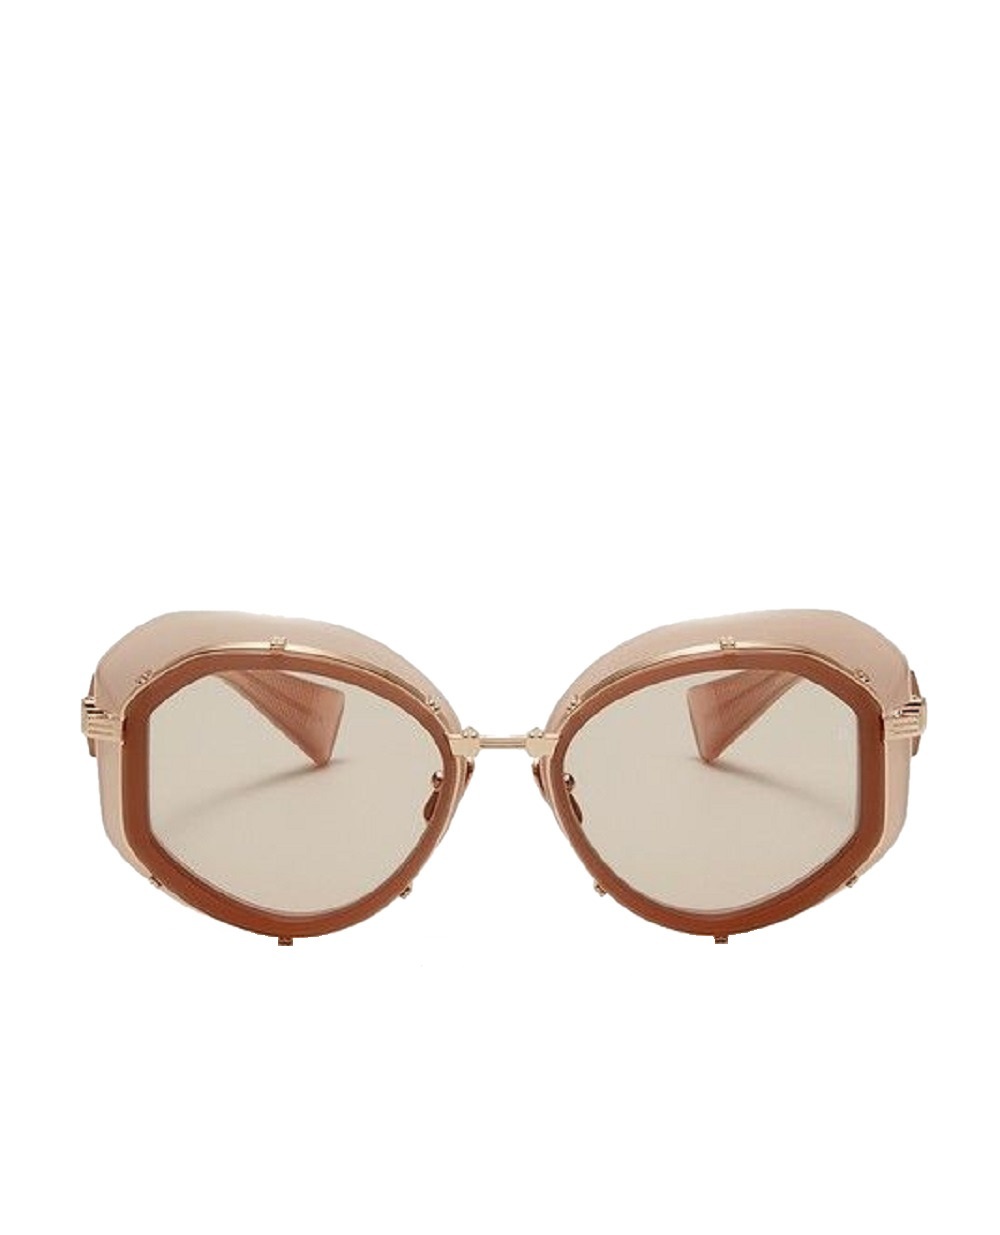 Солнцезащитные очки Brigitte Balmain BPS-129C-53, коричневый цвет • Купить в интернет-магазине Kameron